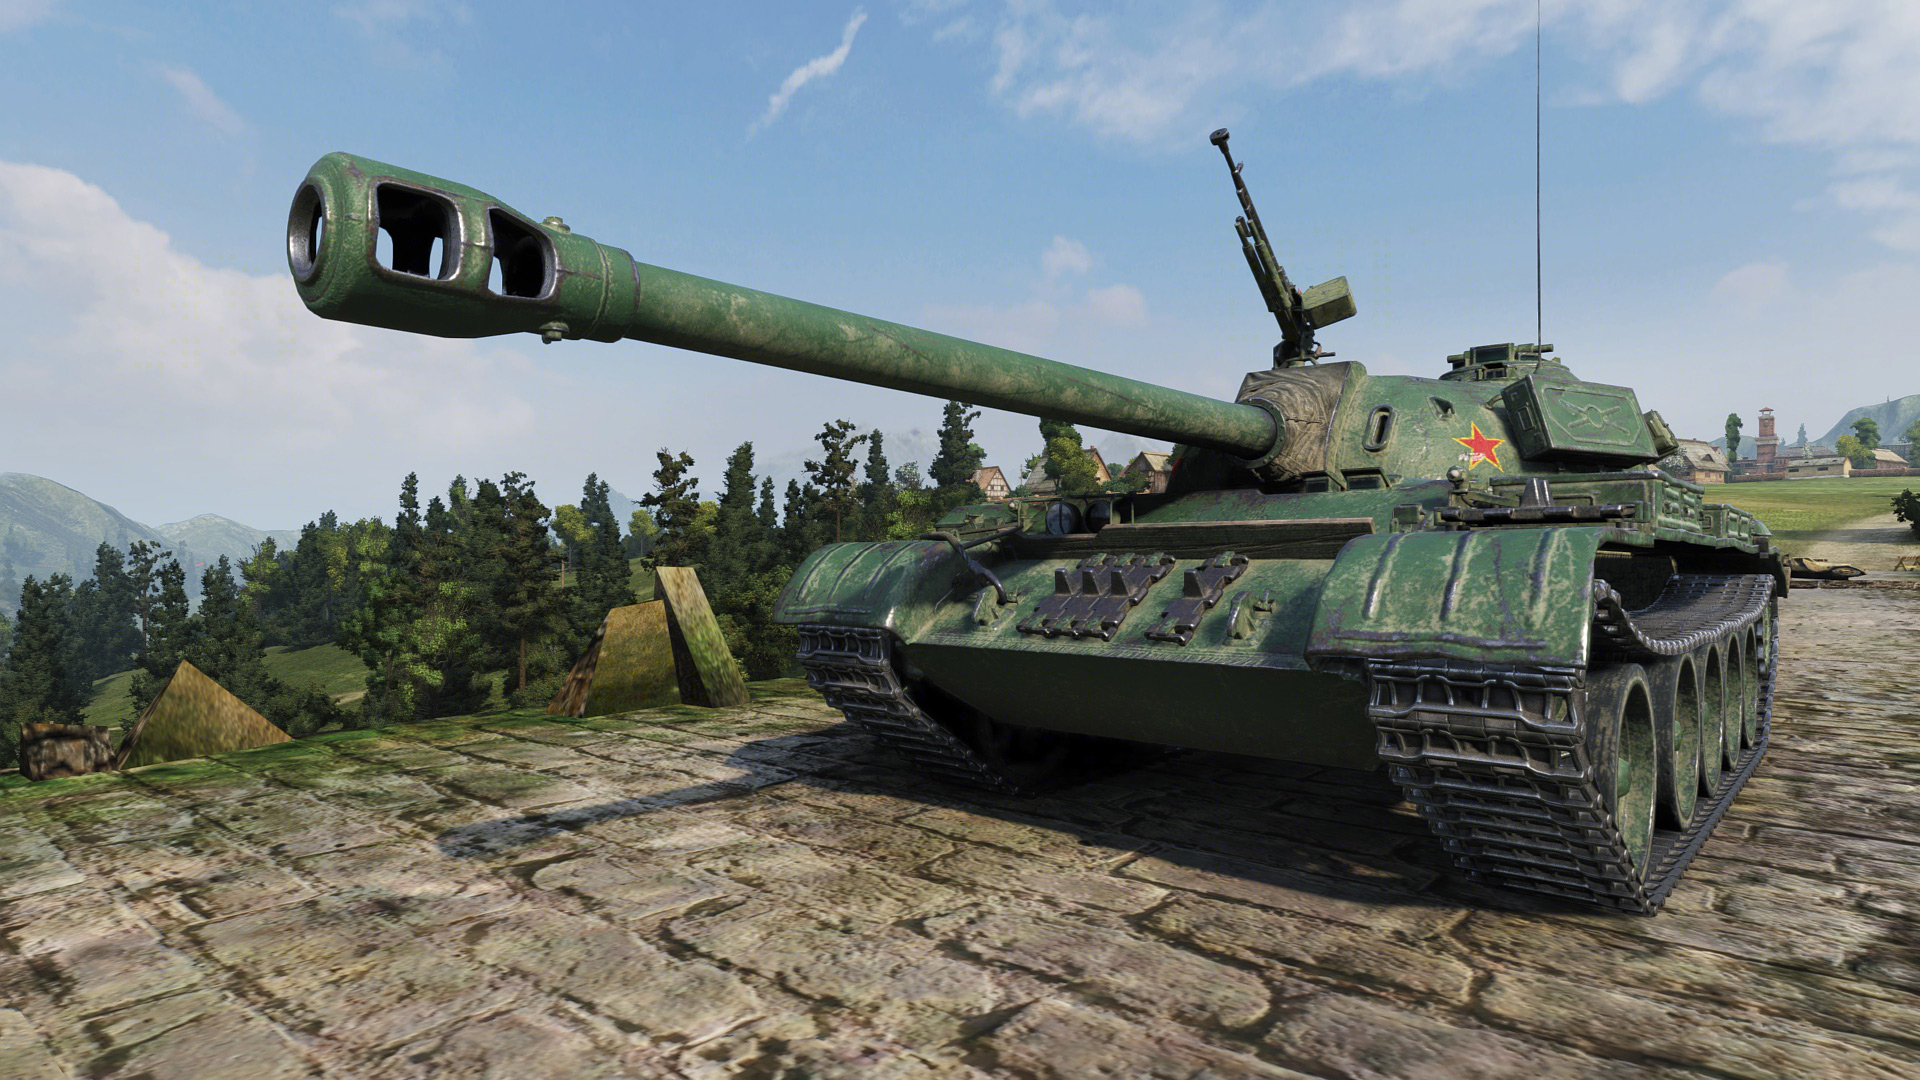 T 34 3 Zostanie Usuniety Ze Sprzedazy Rykoszet Info